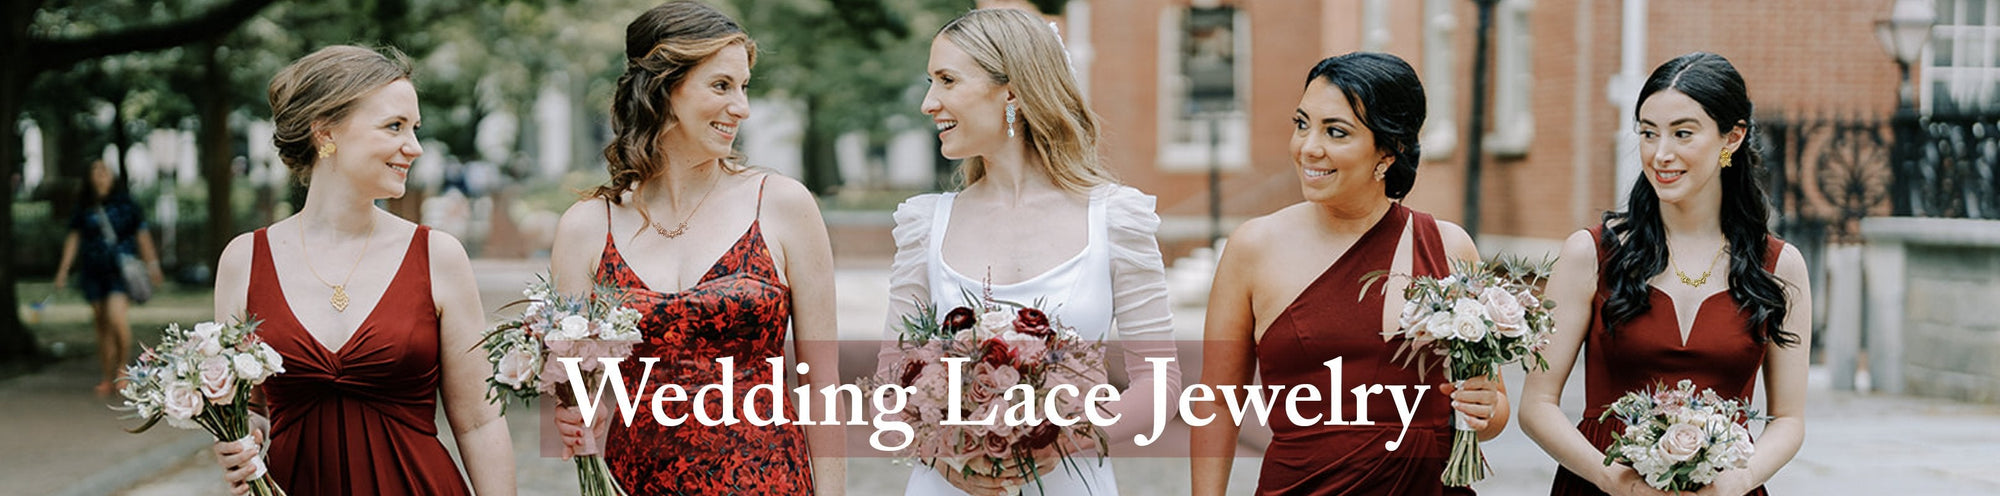 Wedding Lace Jewelry